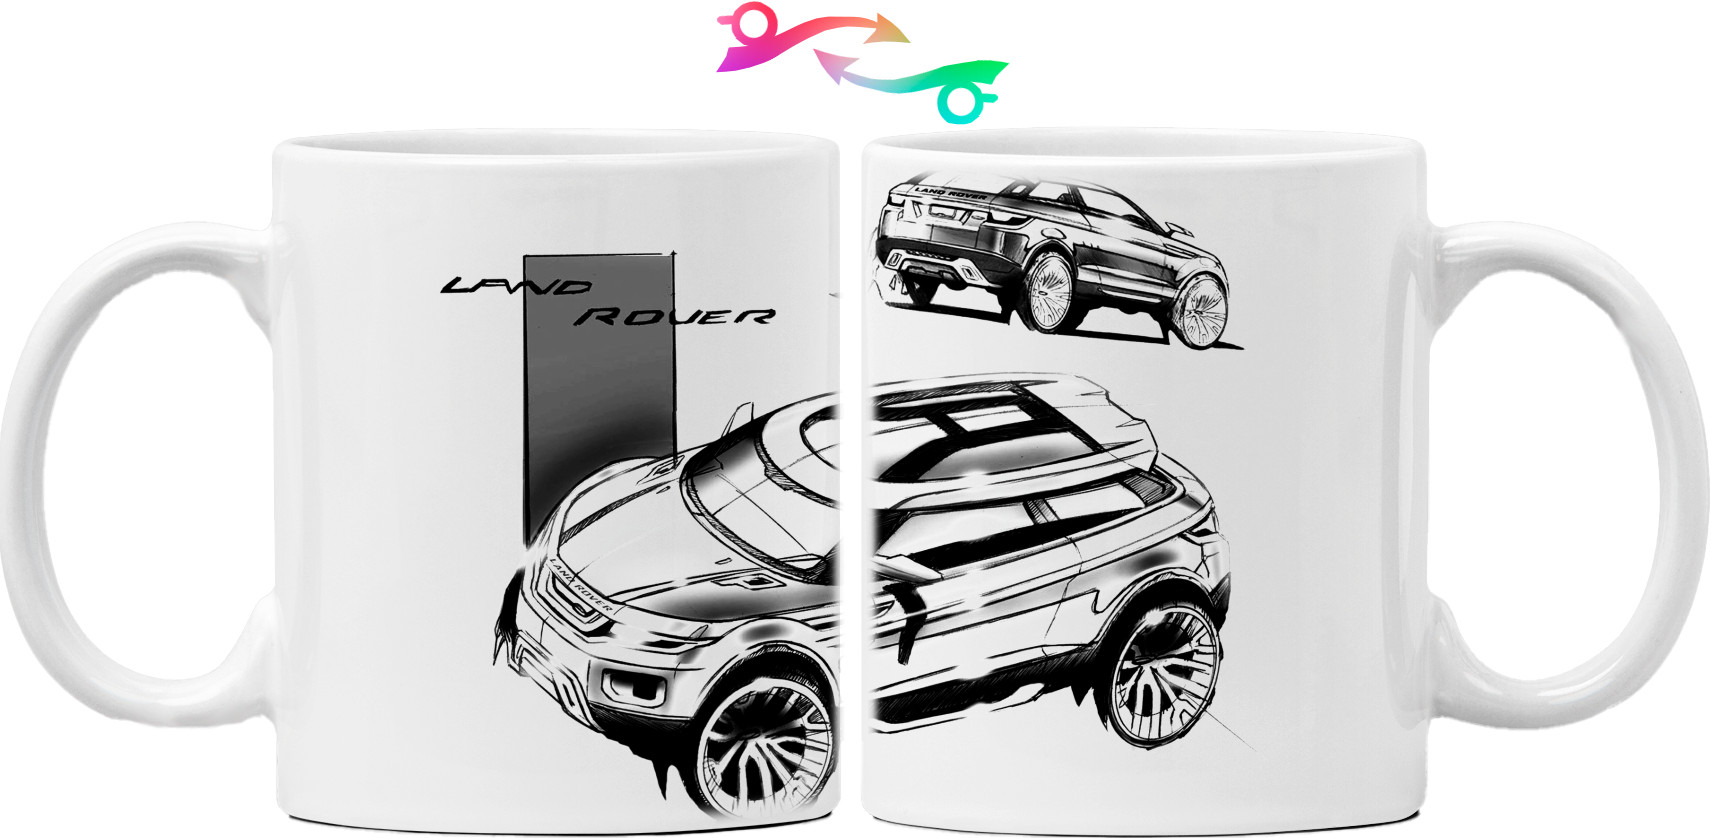 Range Rover - Logo 9